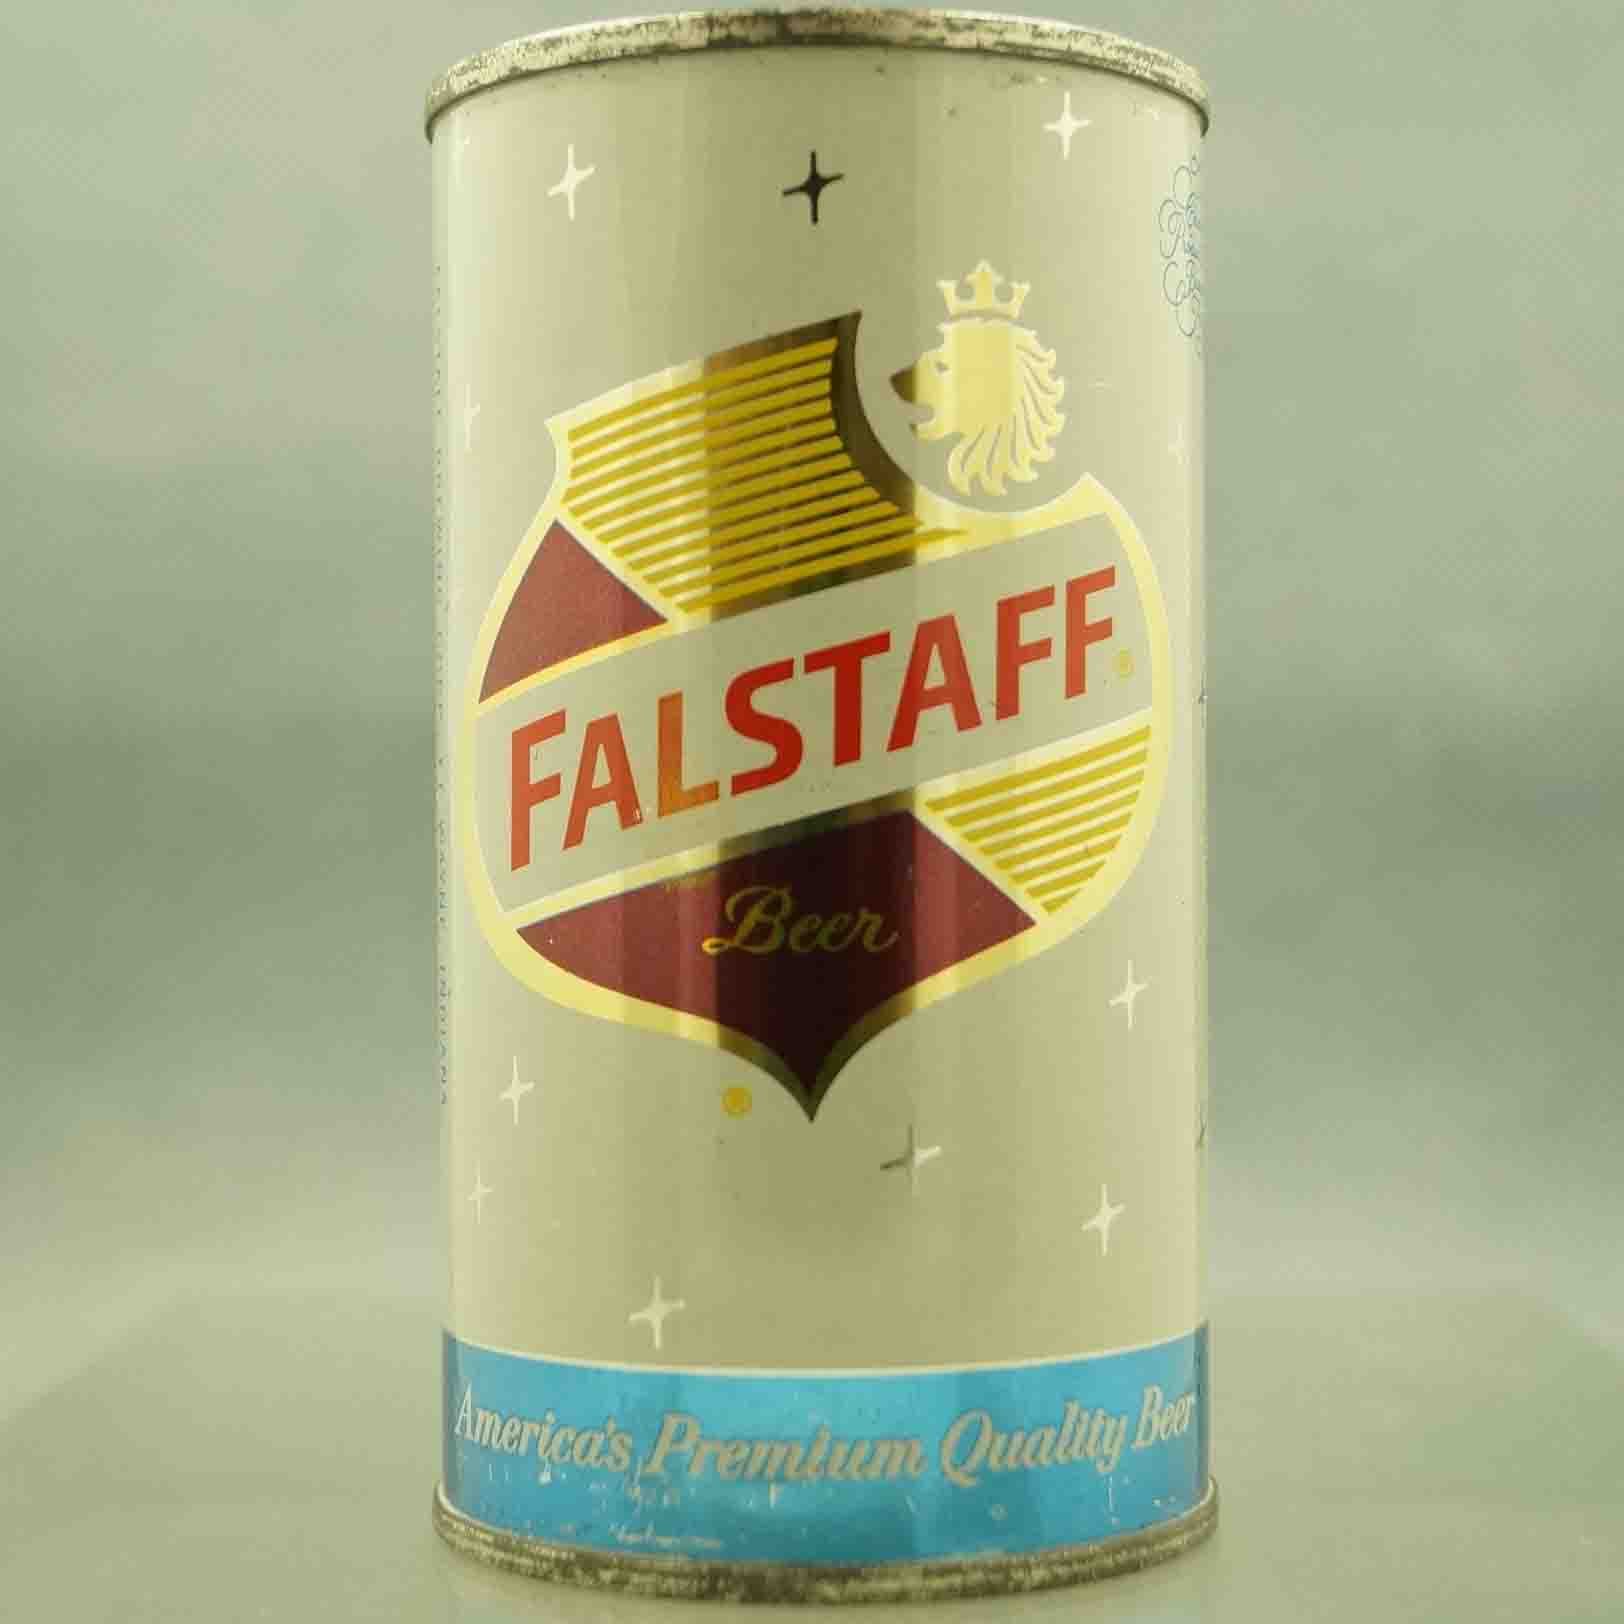 Falstaff.jpg